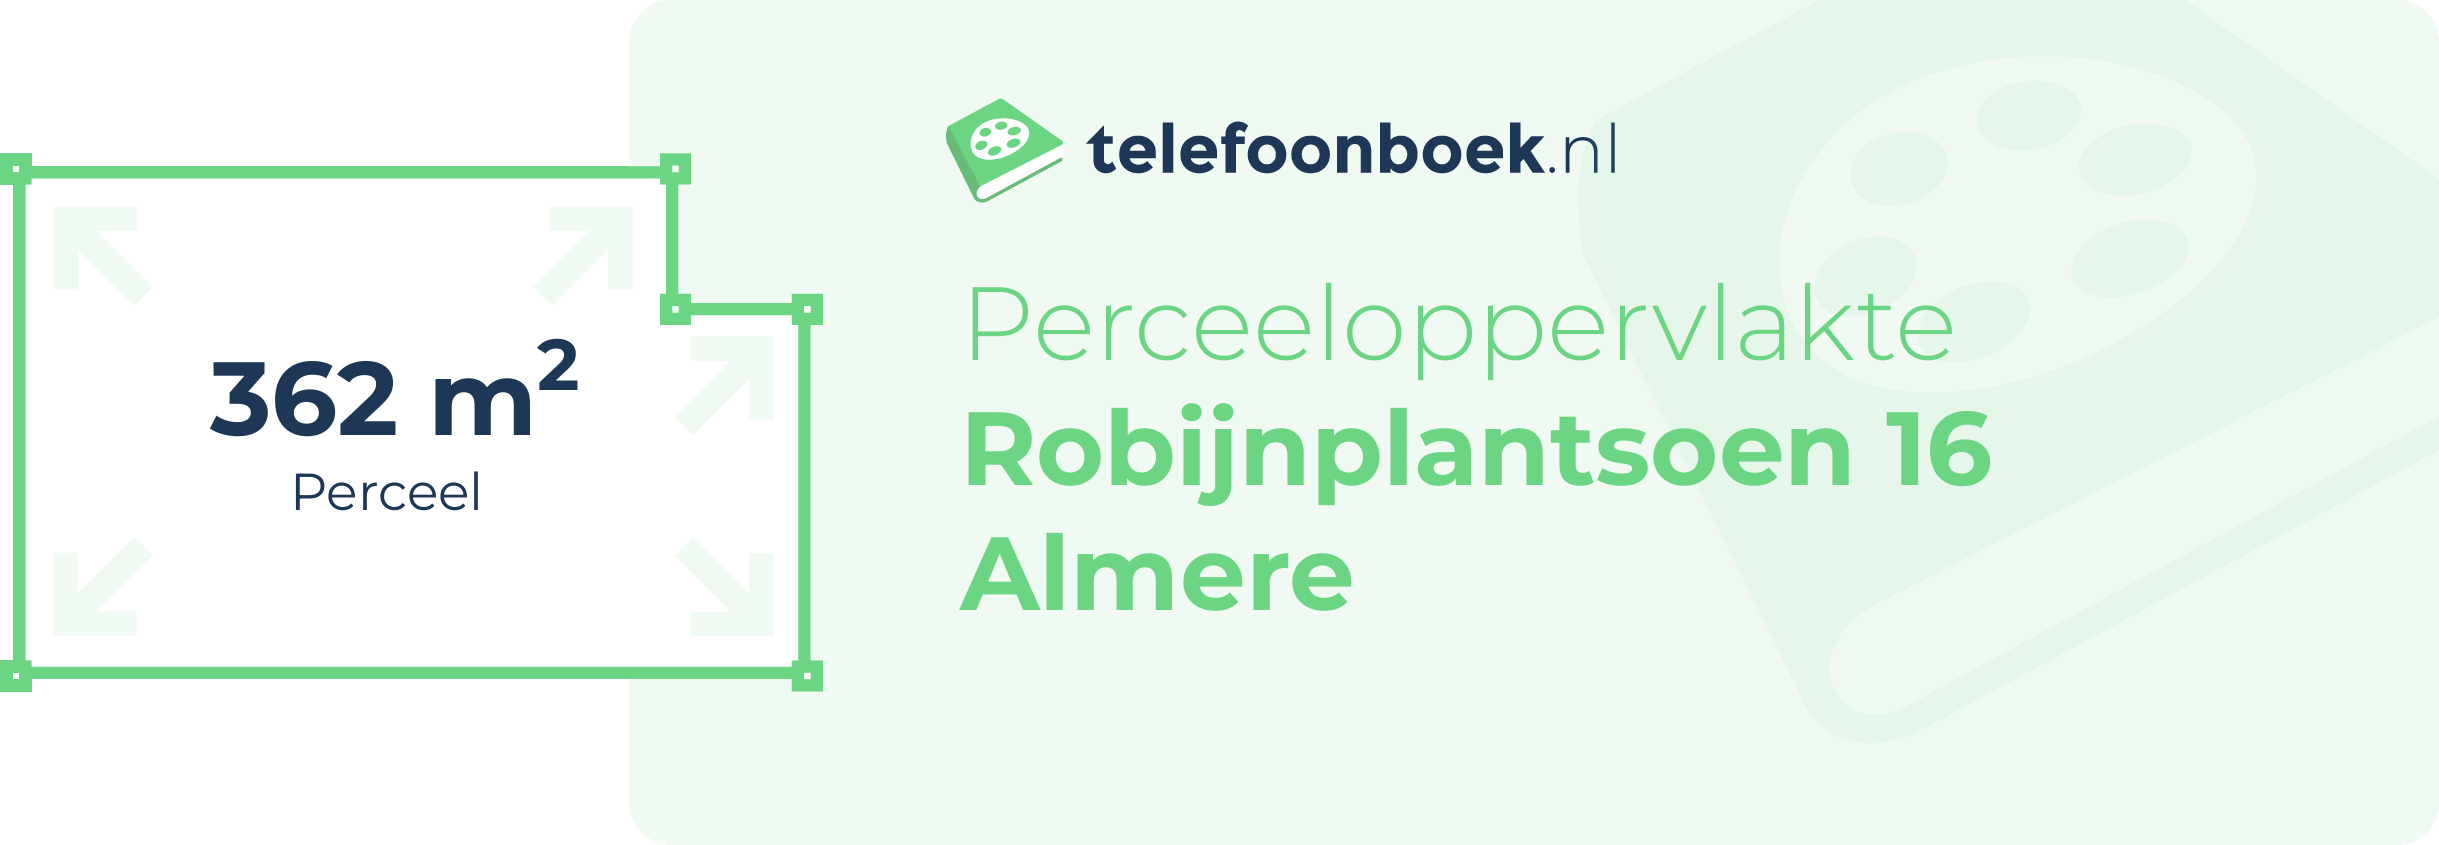 Perceeloppervlakte Robijnplantsoen 16 Almere